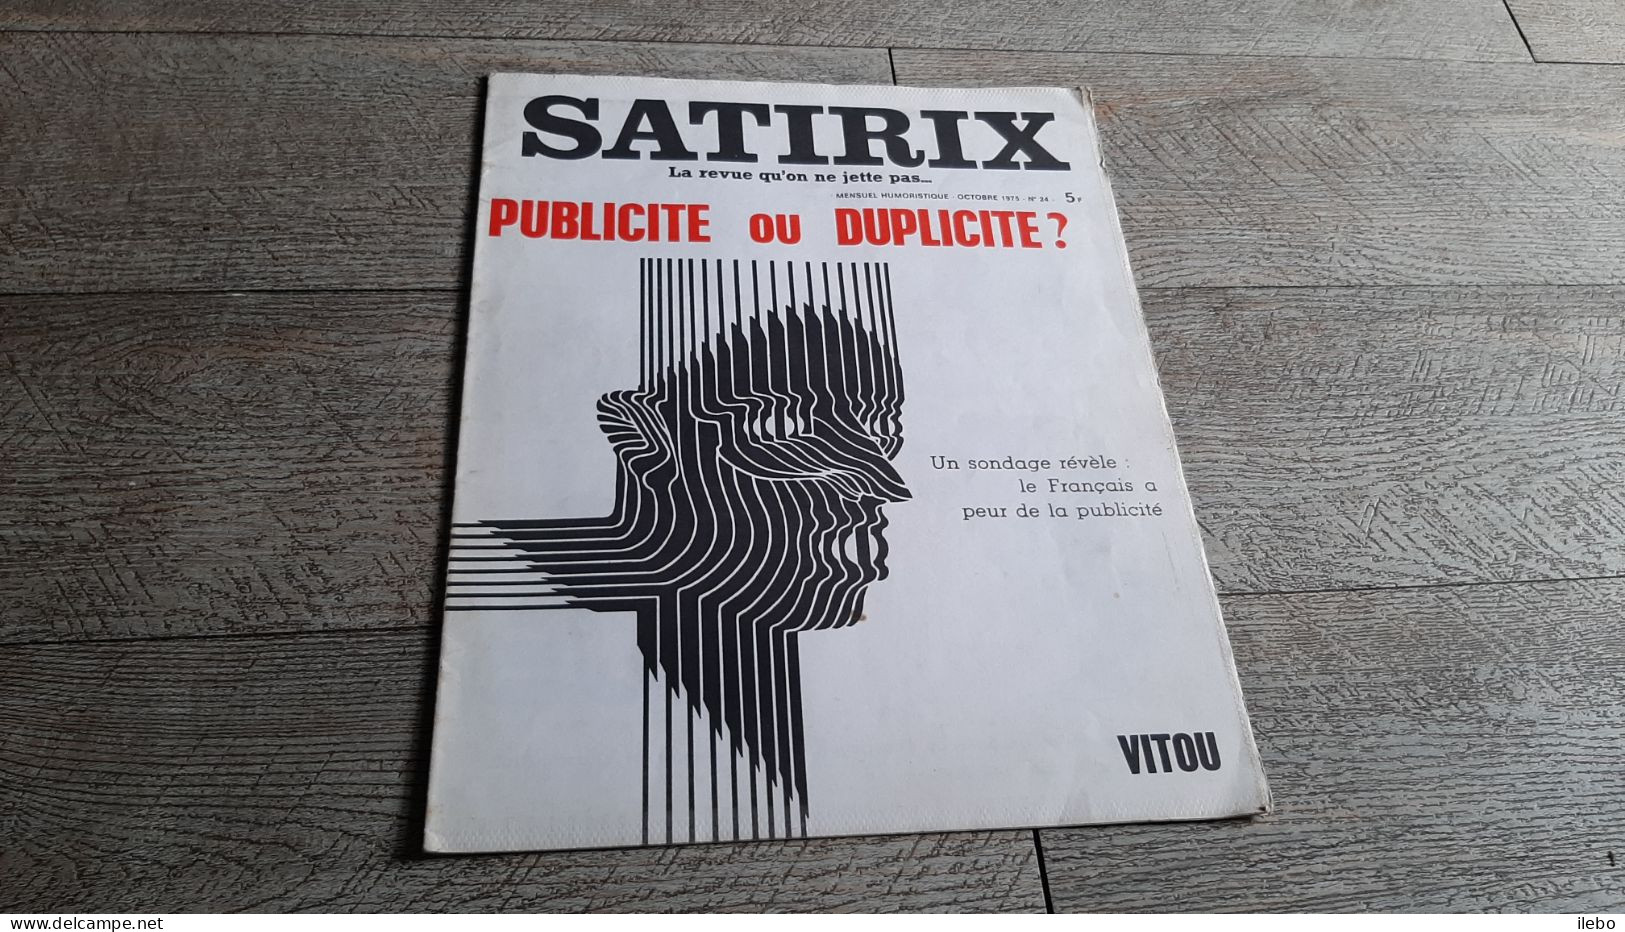 Revue Satirix 1973 Publicité Ou Duplicité Vitou   Satirique Caricature Politique N°24 - Humor